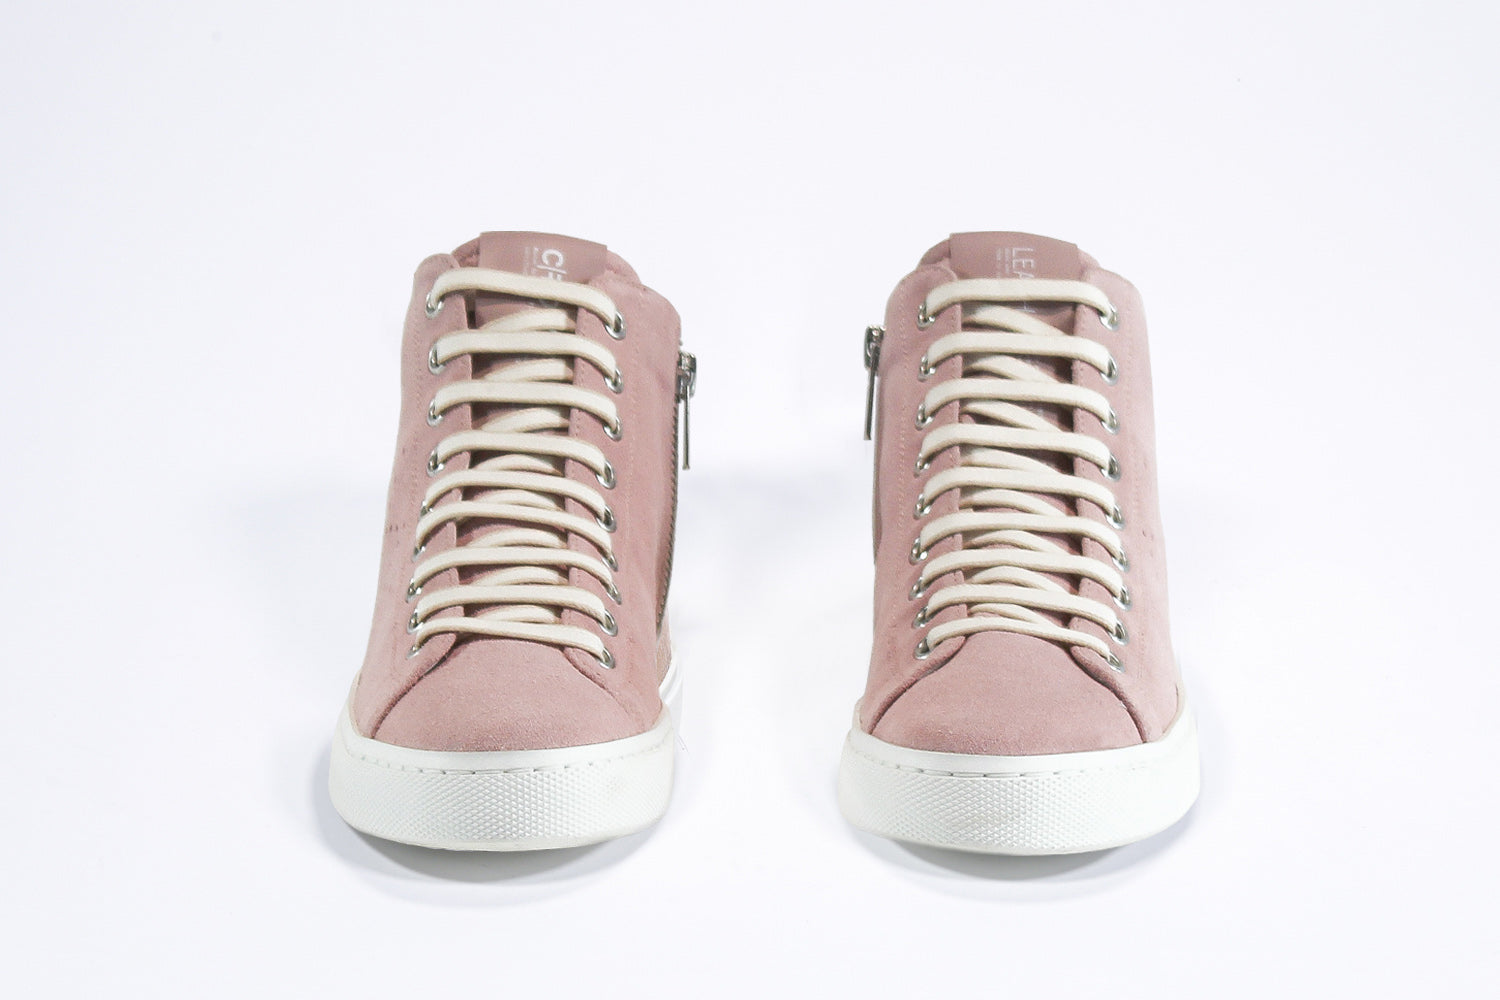 Vista frontale del modello mid top sneaker con tomaia in pelle e camoscio rosa, zip interna e suola bianca.